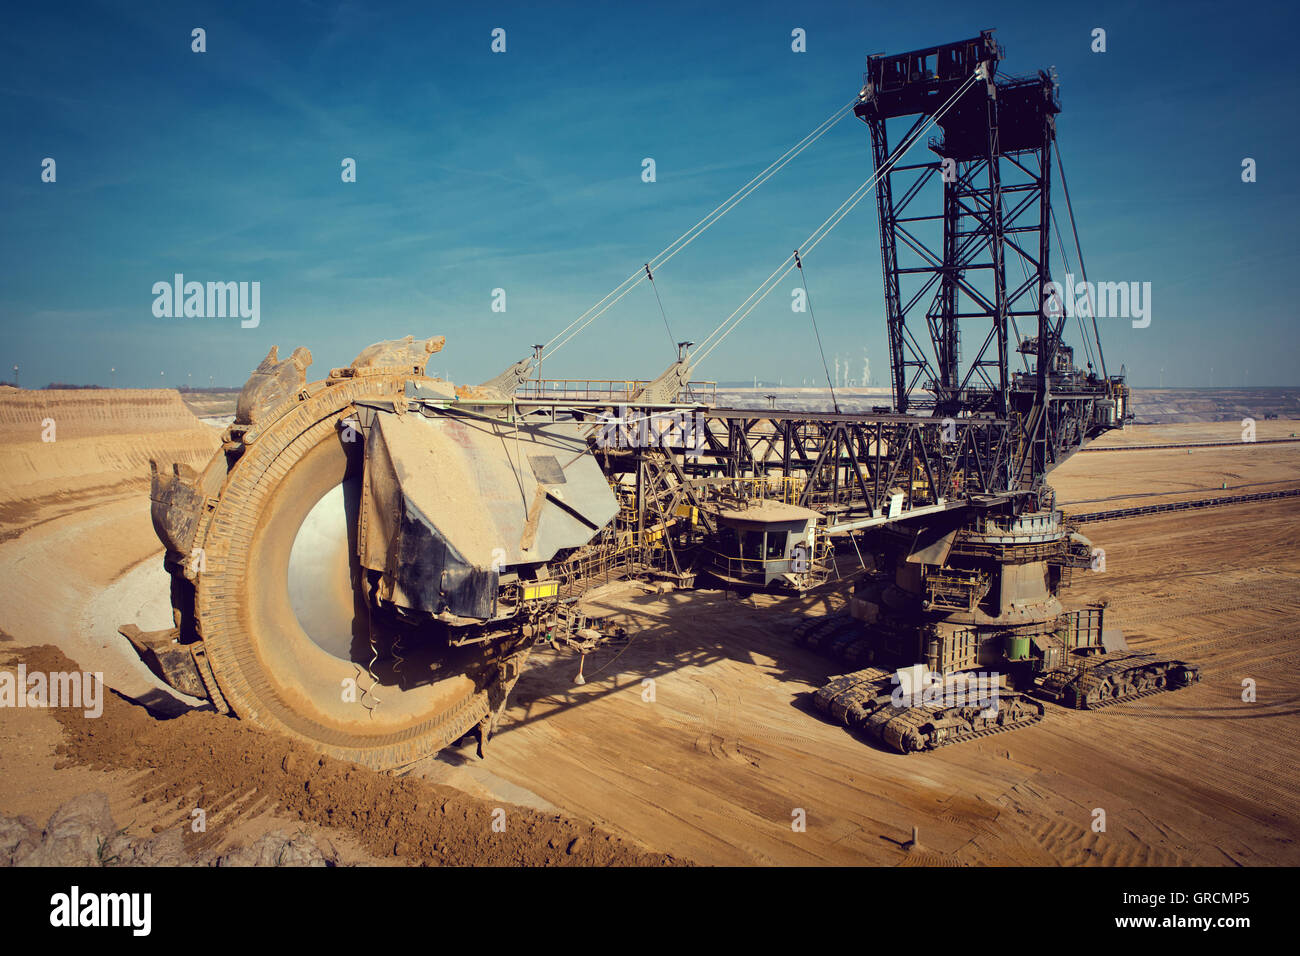 Lignite Mining Garzweiler, Braunkohlebagger, Bucket Wheel Excavator In The Garzweiler, North Rhine-Westphalia Stock Photo